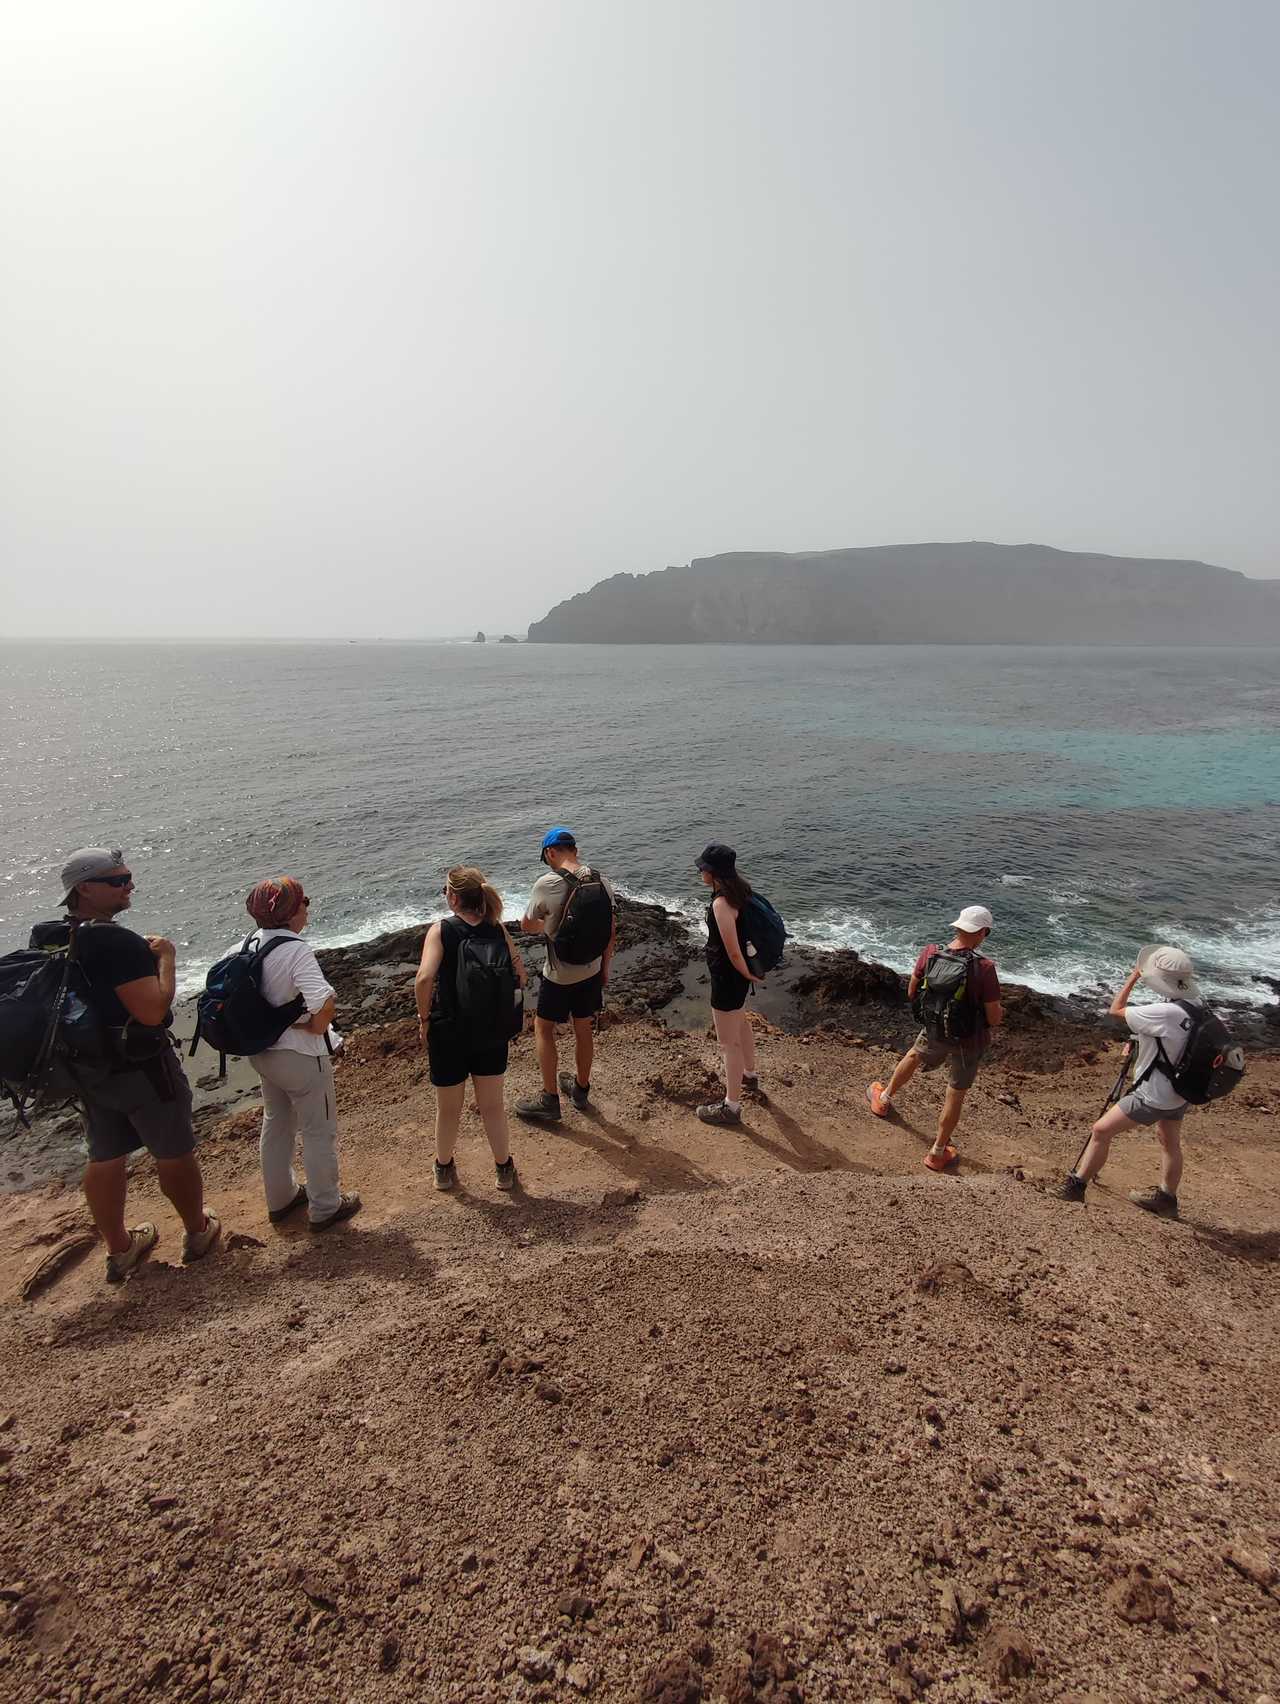 Randonneurs en randonnée sur la côte de la Graciosa à Lanzarote